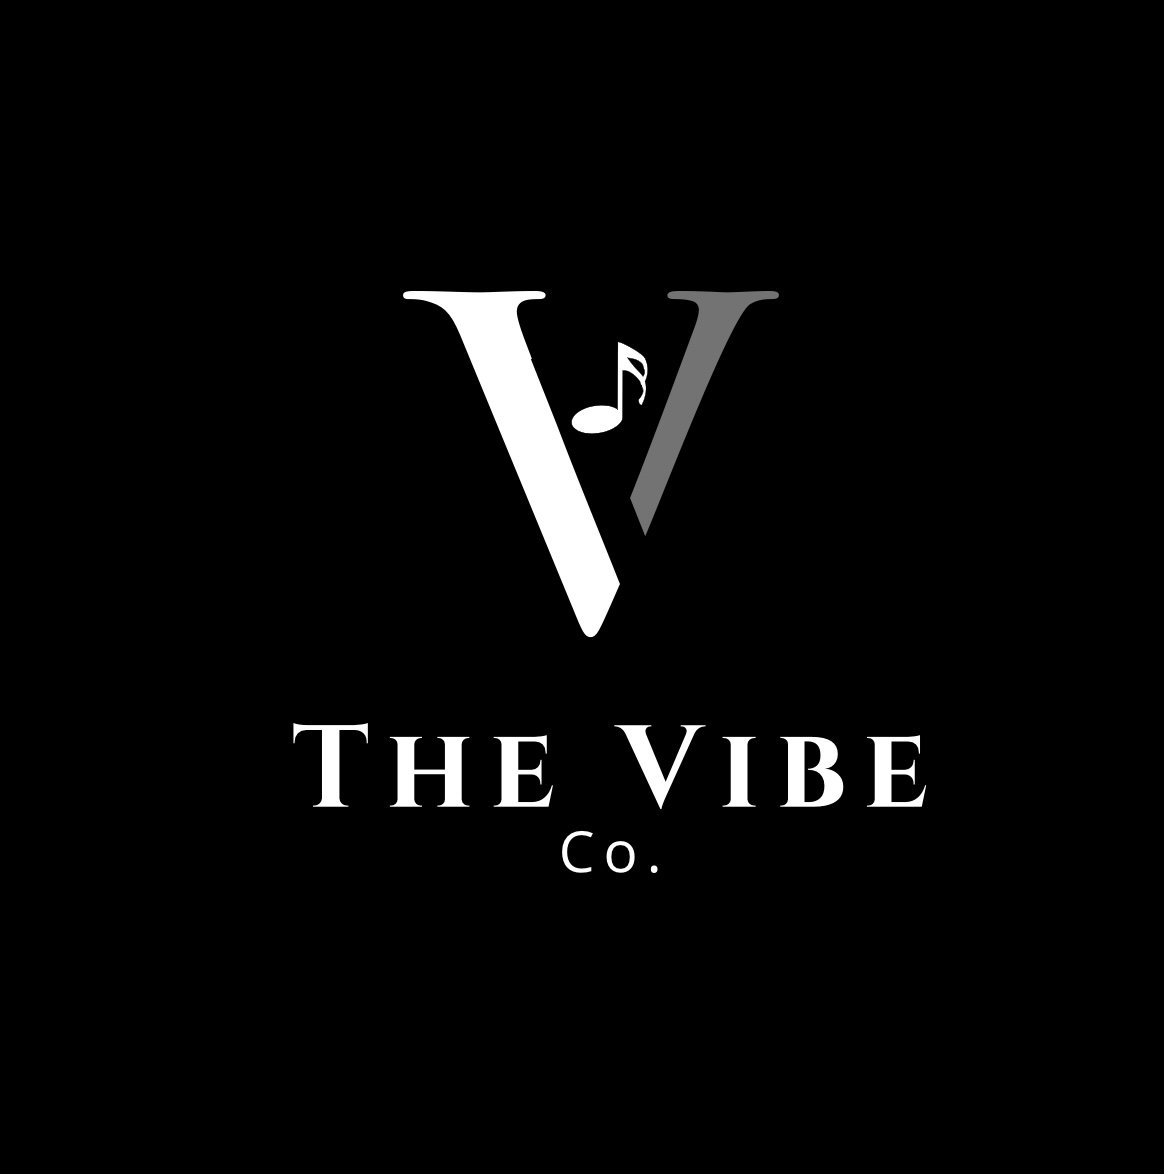 The Vibe Co. Ltd